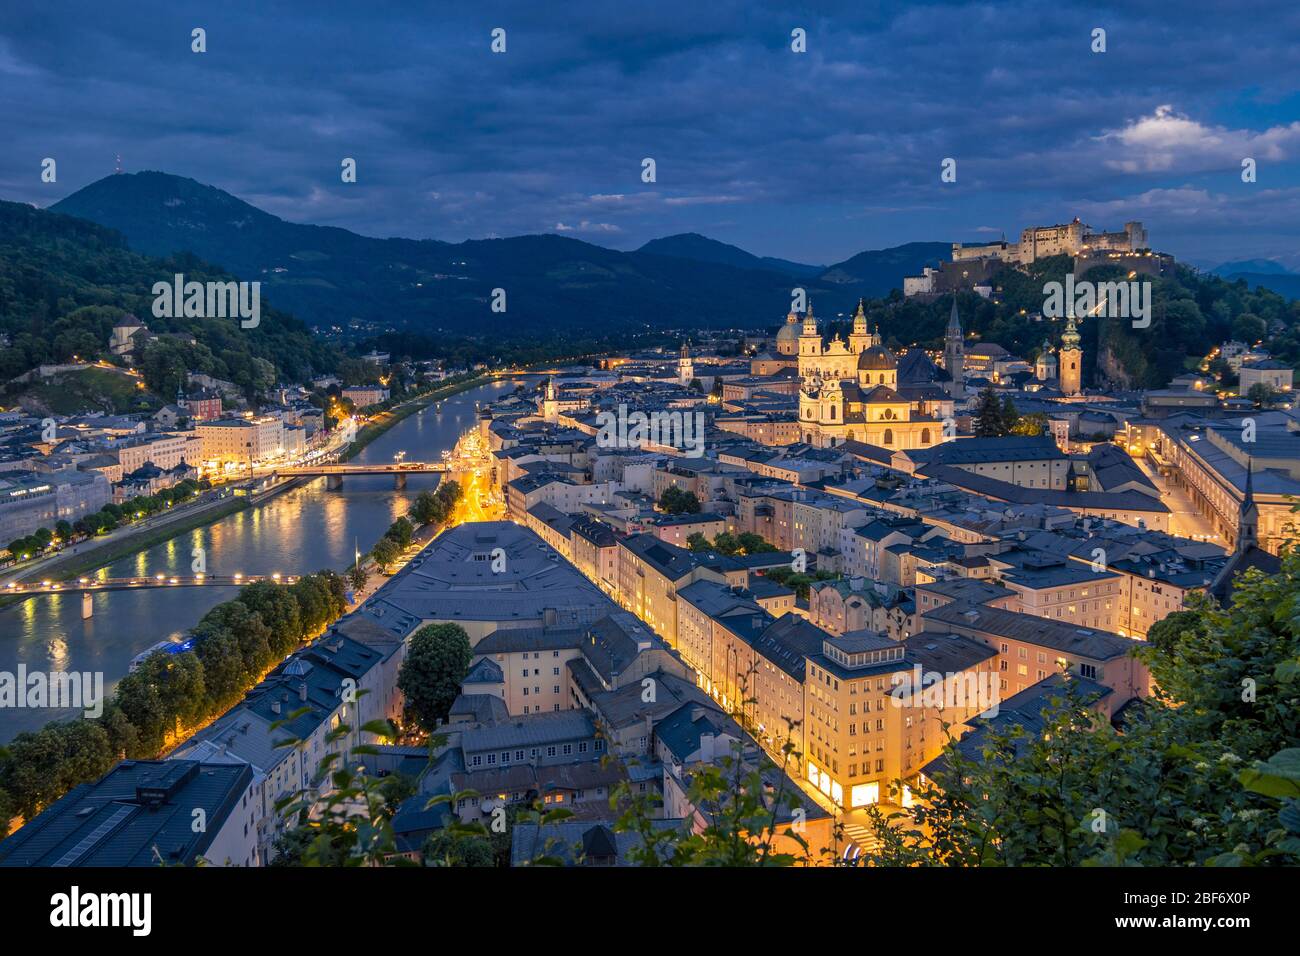 Centro histórico de Salzburgo al atardecer, Austria, Salzburgo Foto de stock